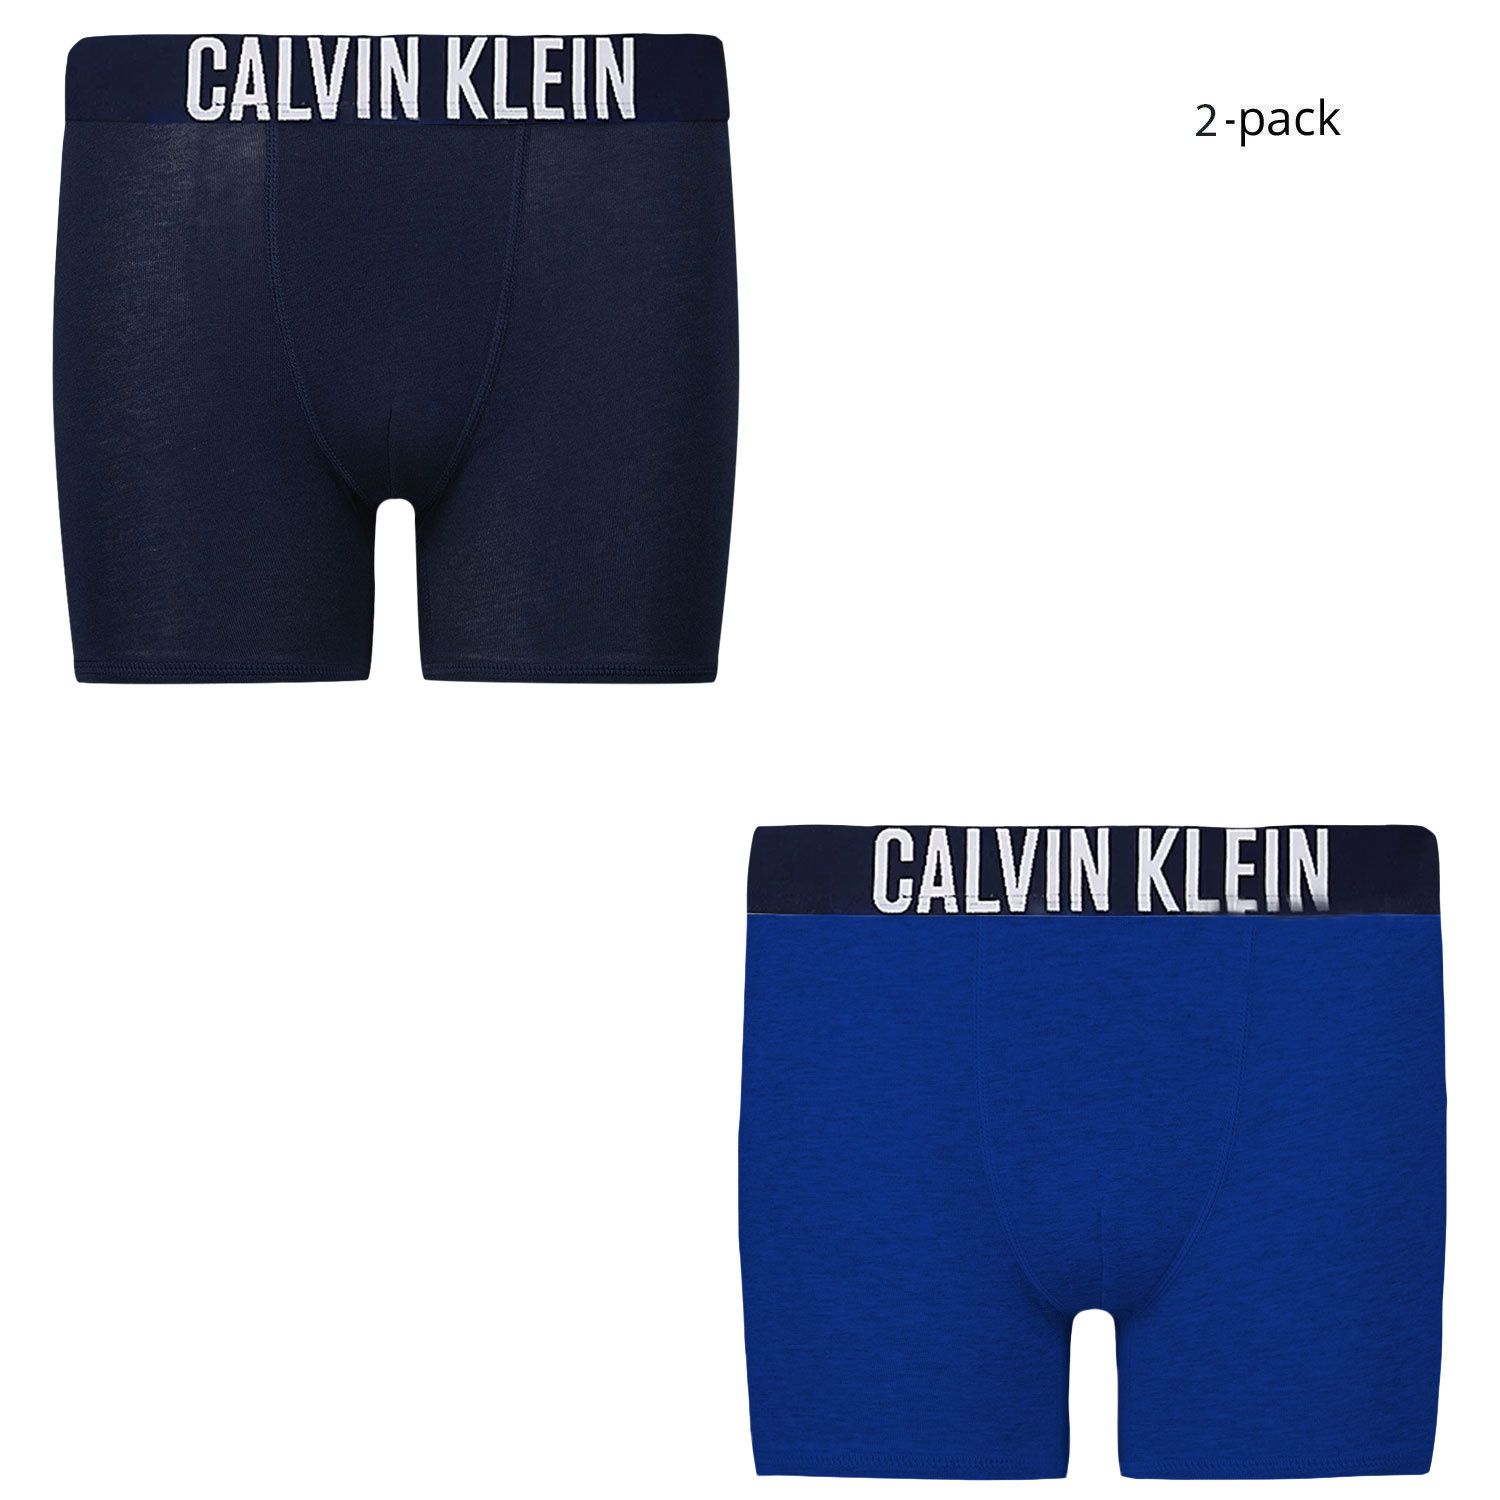 Afbeelding van Calvin Klein B70B700380 kinderondergoed cobalt blauw/zwart